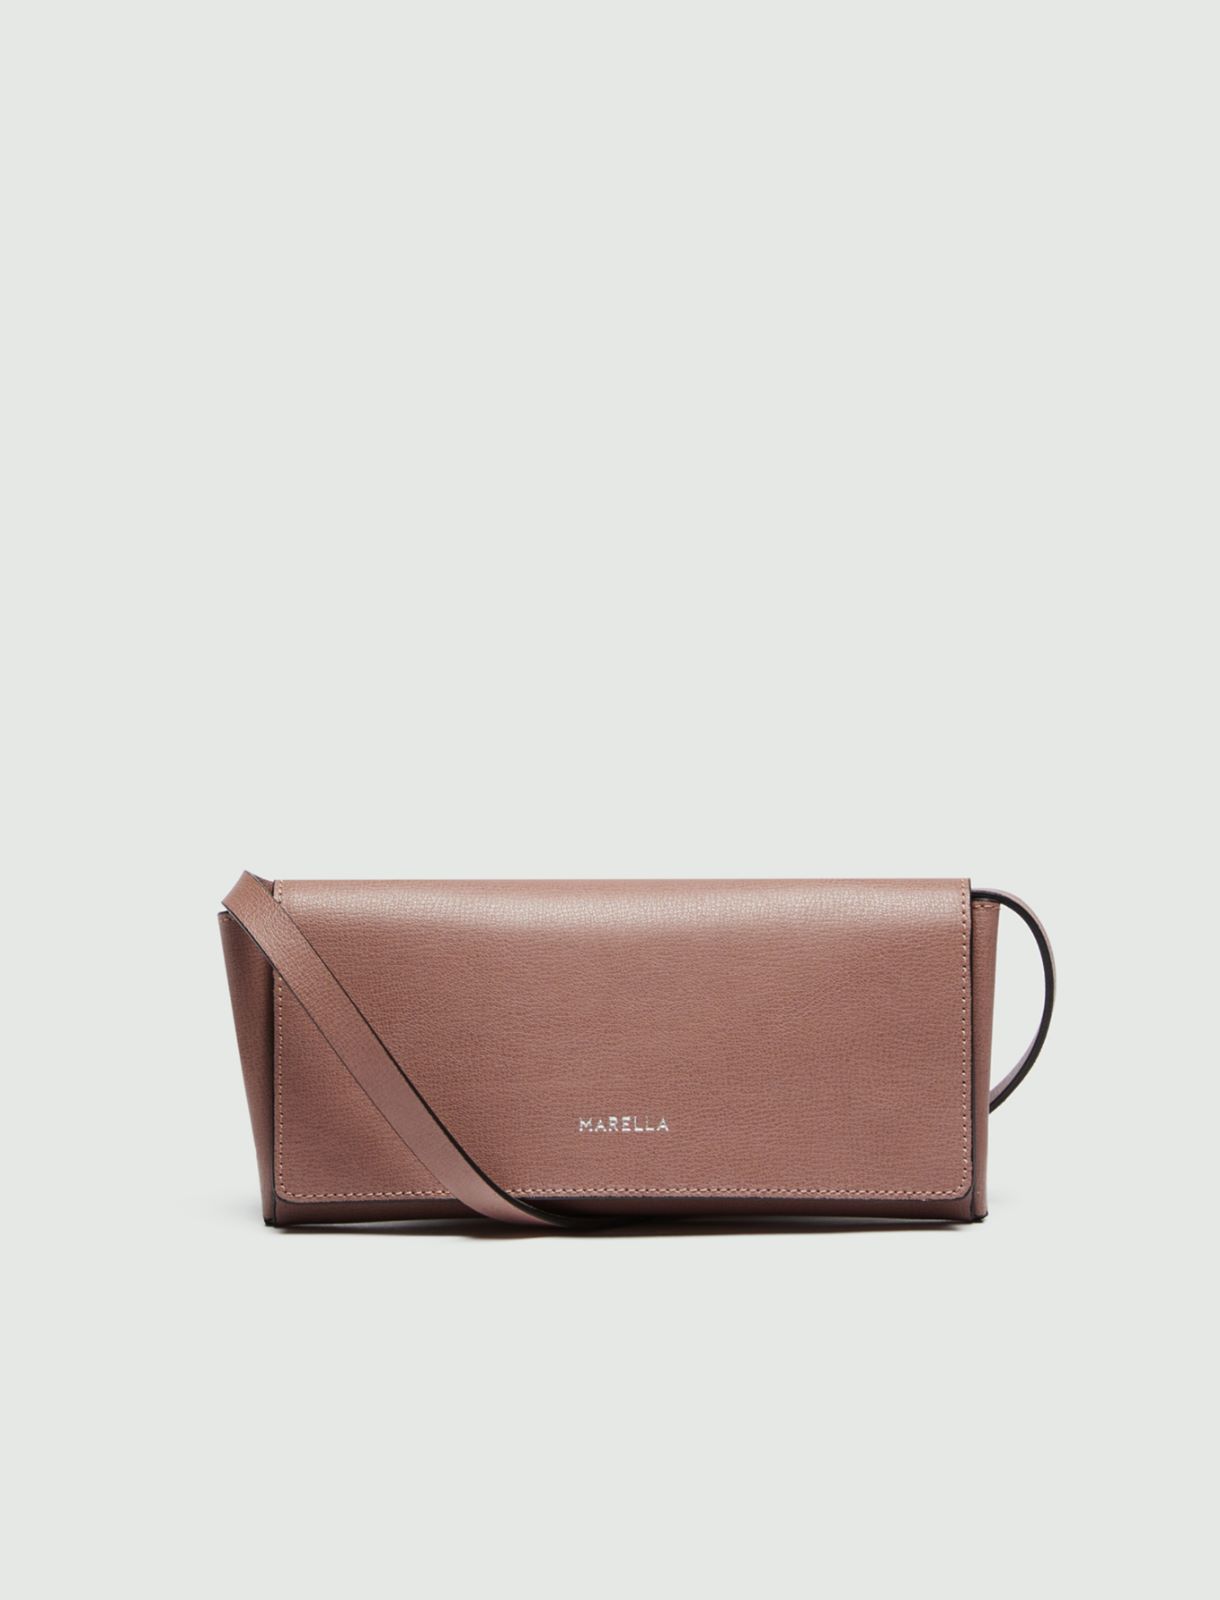 Leather wallet/bag  - Antique rose - Marella